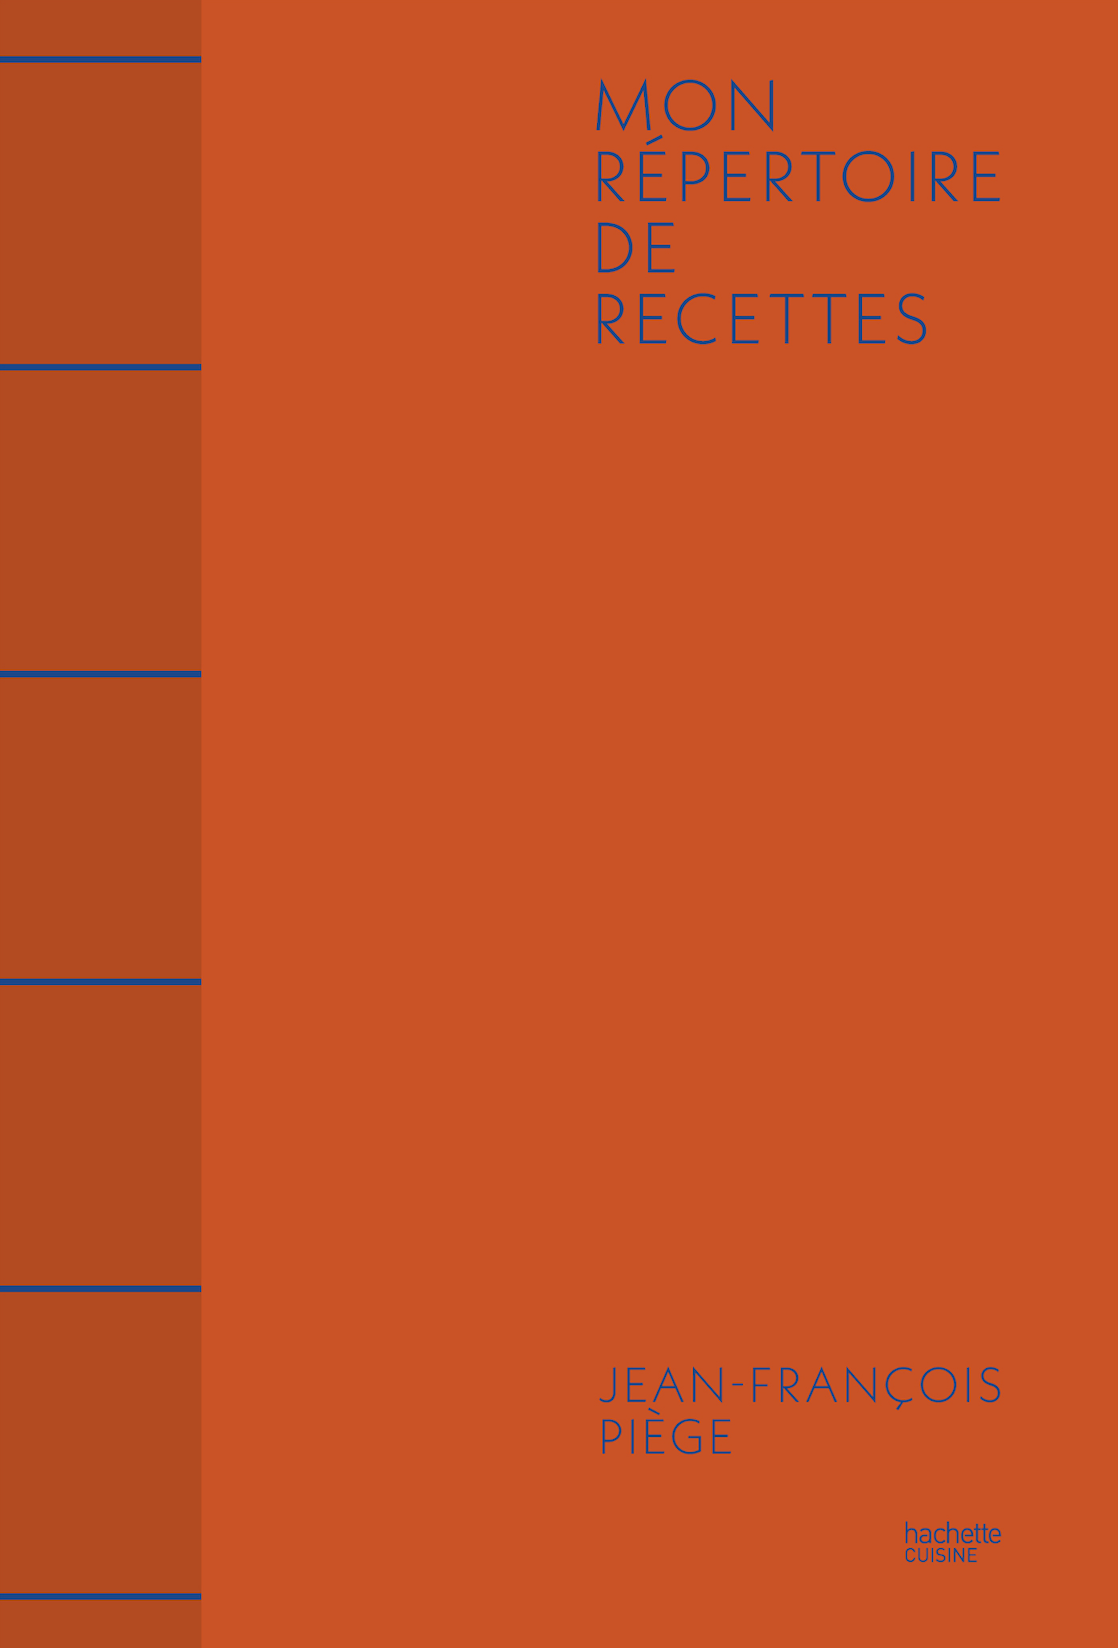 « Mon répertoire de recettes », nouvel ouvrage de Jean-François Piège